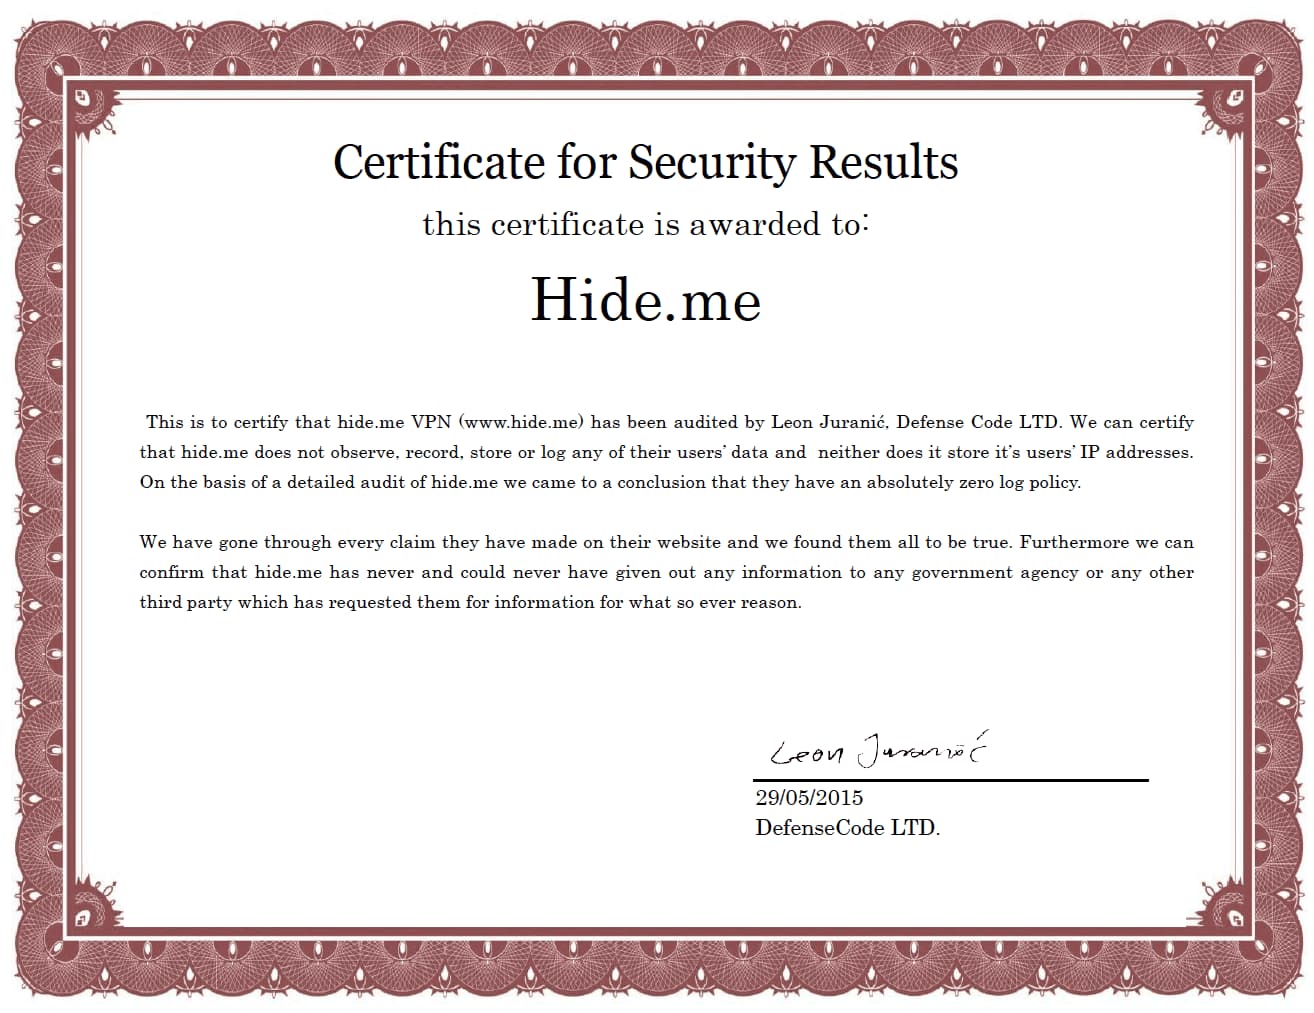 Hide.me Audit-Zertifikat von DefenseCode Ltd. verliehen